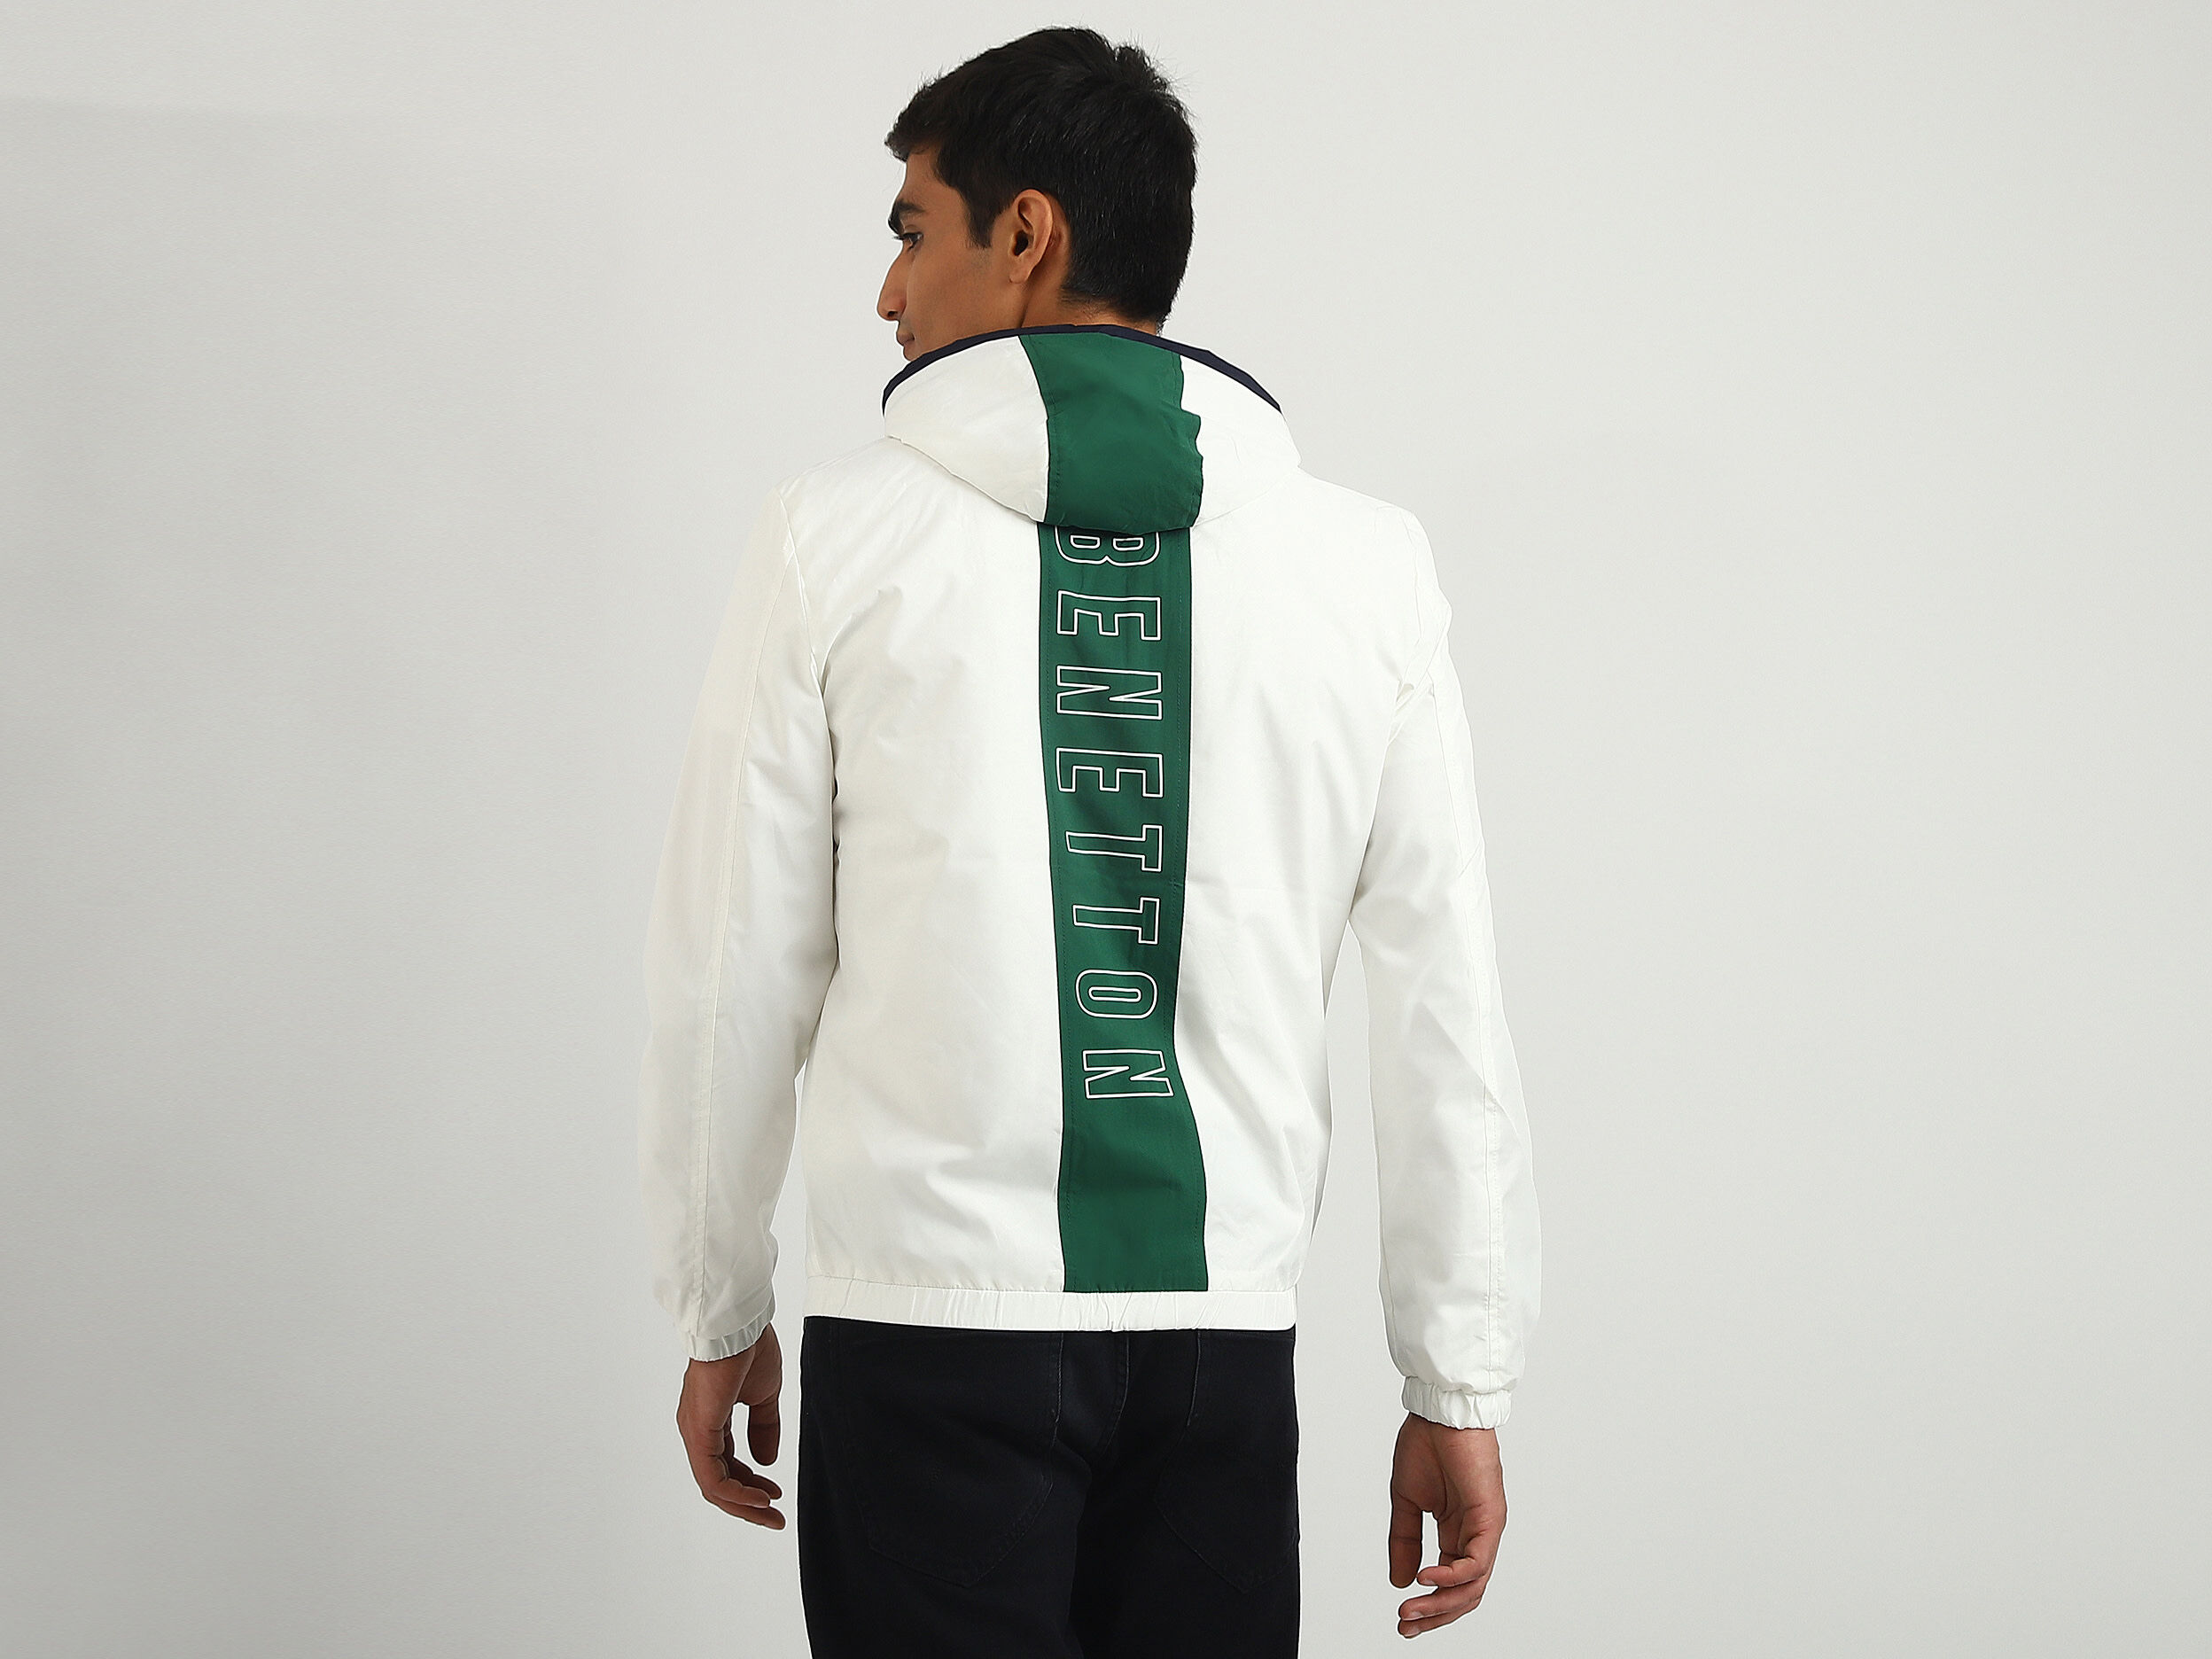 UCB Bomber Jacket With Logo Online On Promotionalwears